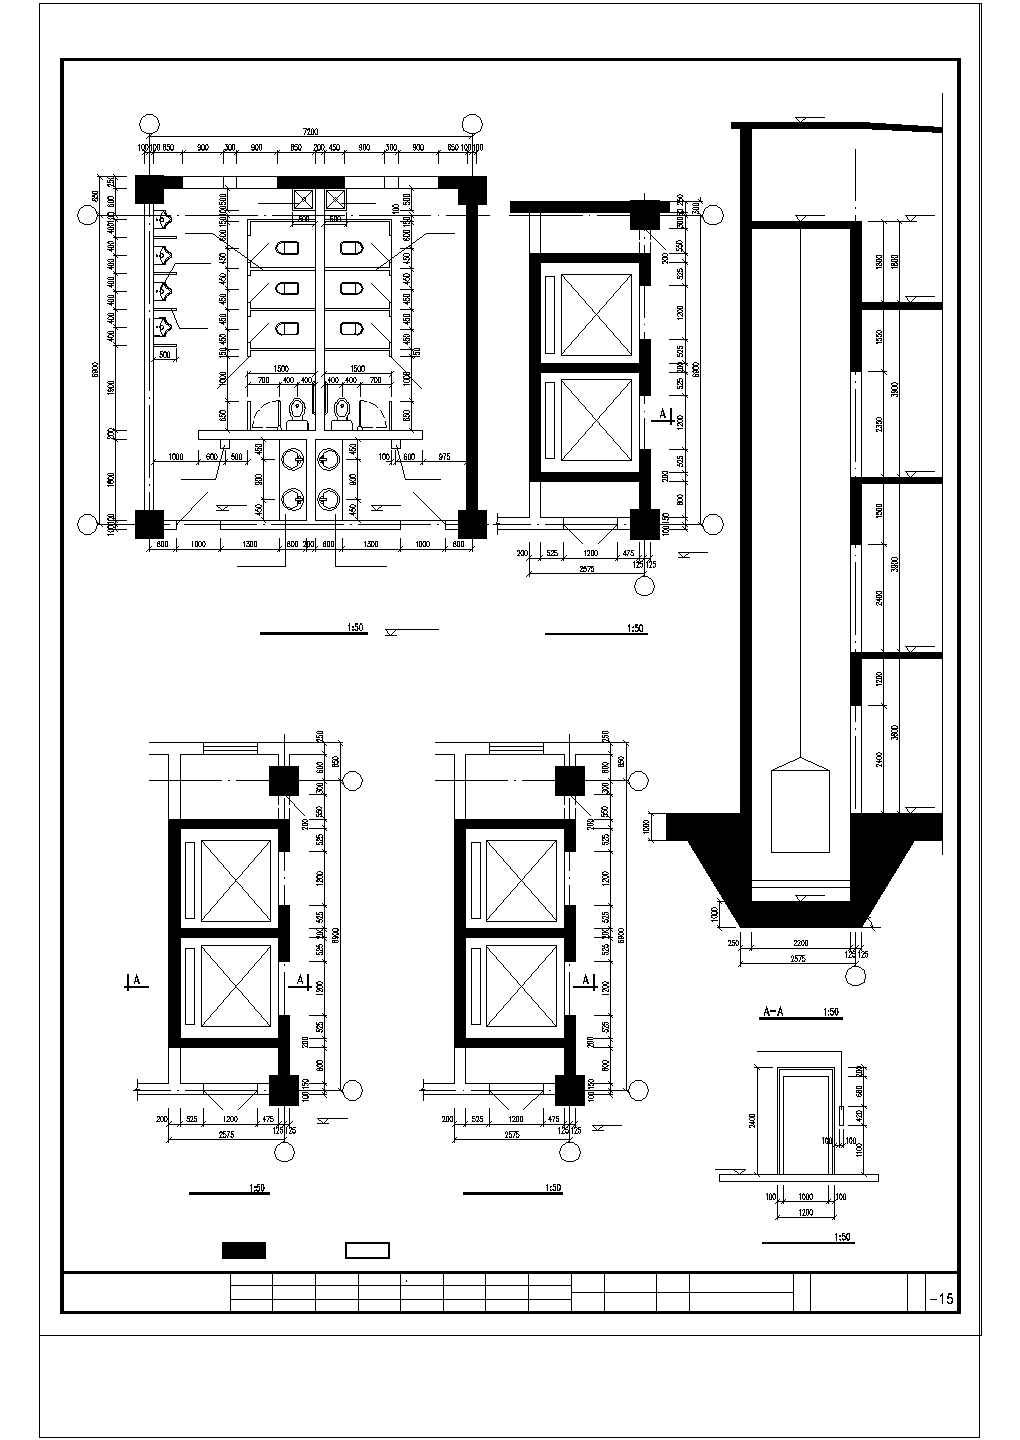 多层办公楼土建及钢筋工程量计算实例(图纸广联达软件实例)